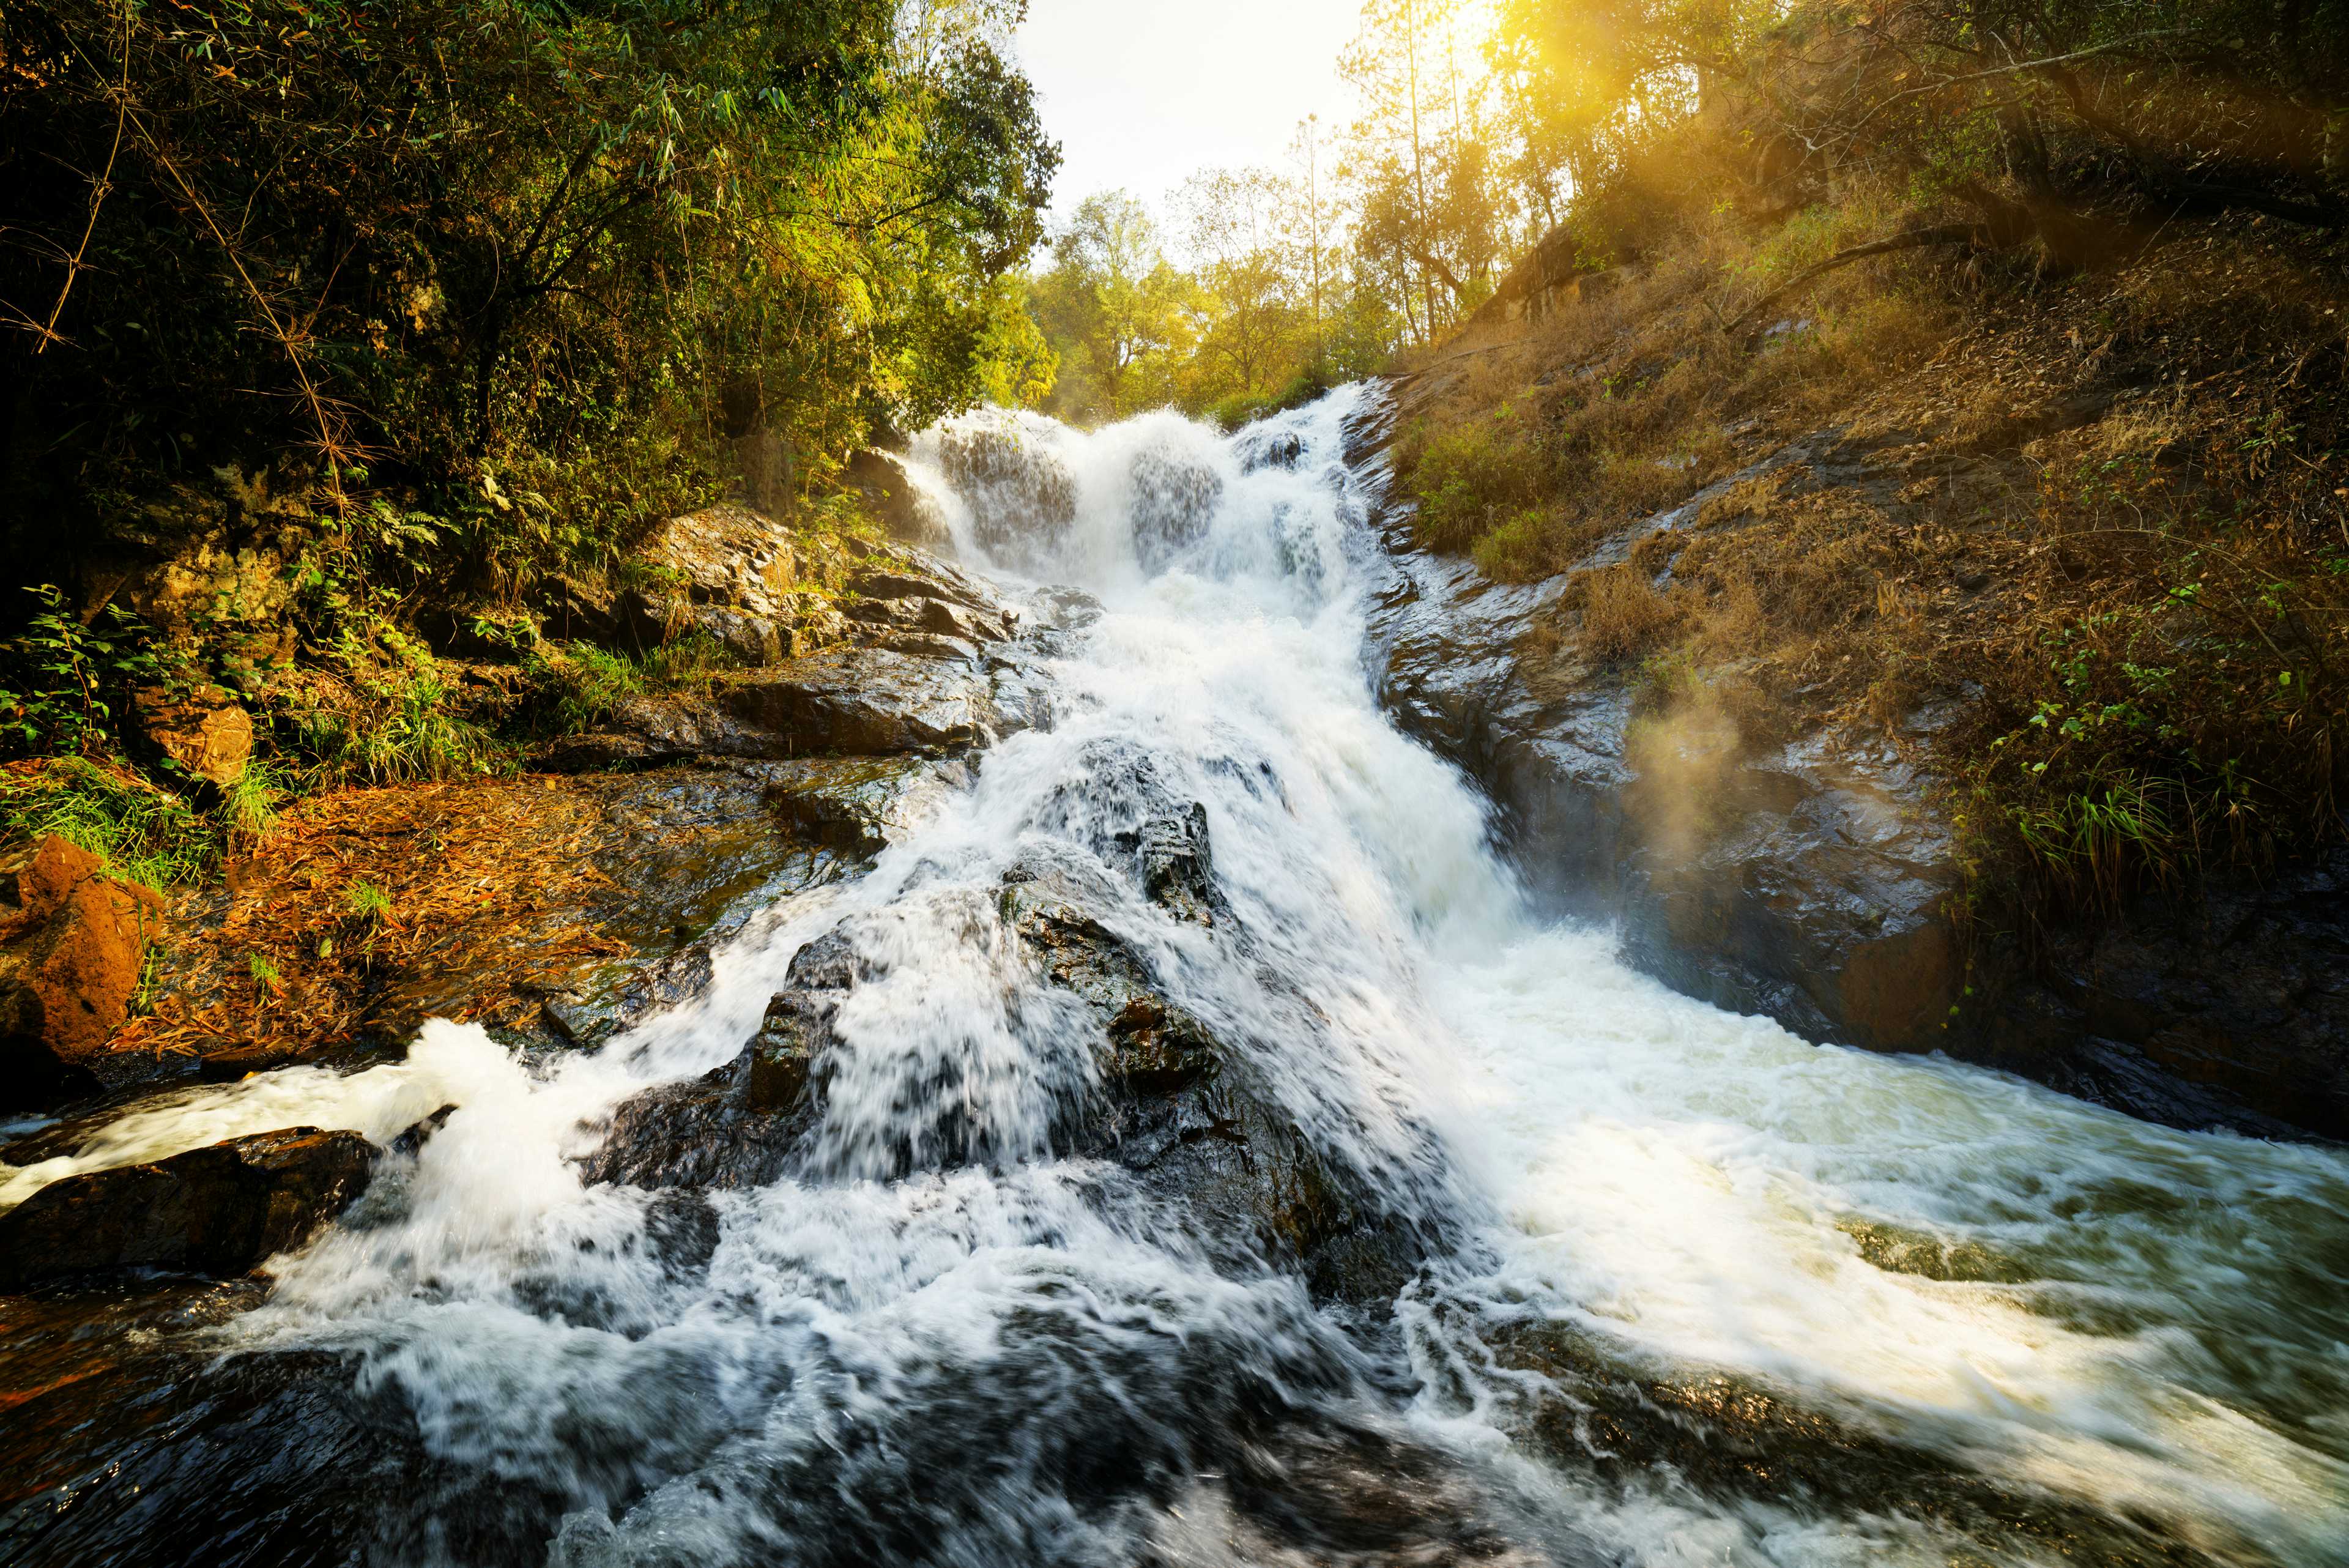 Datanla Falls